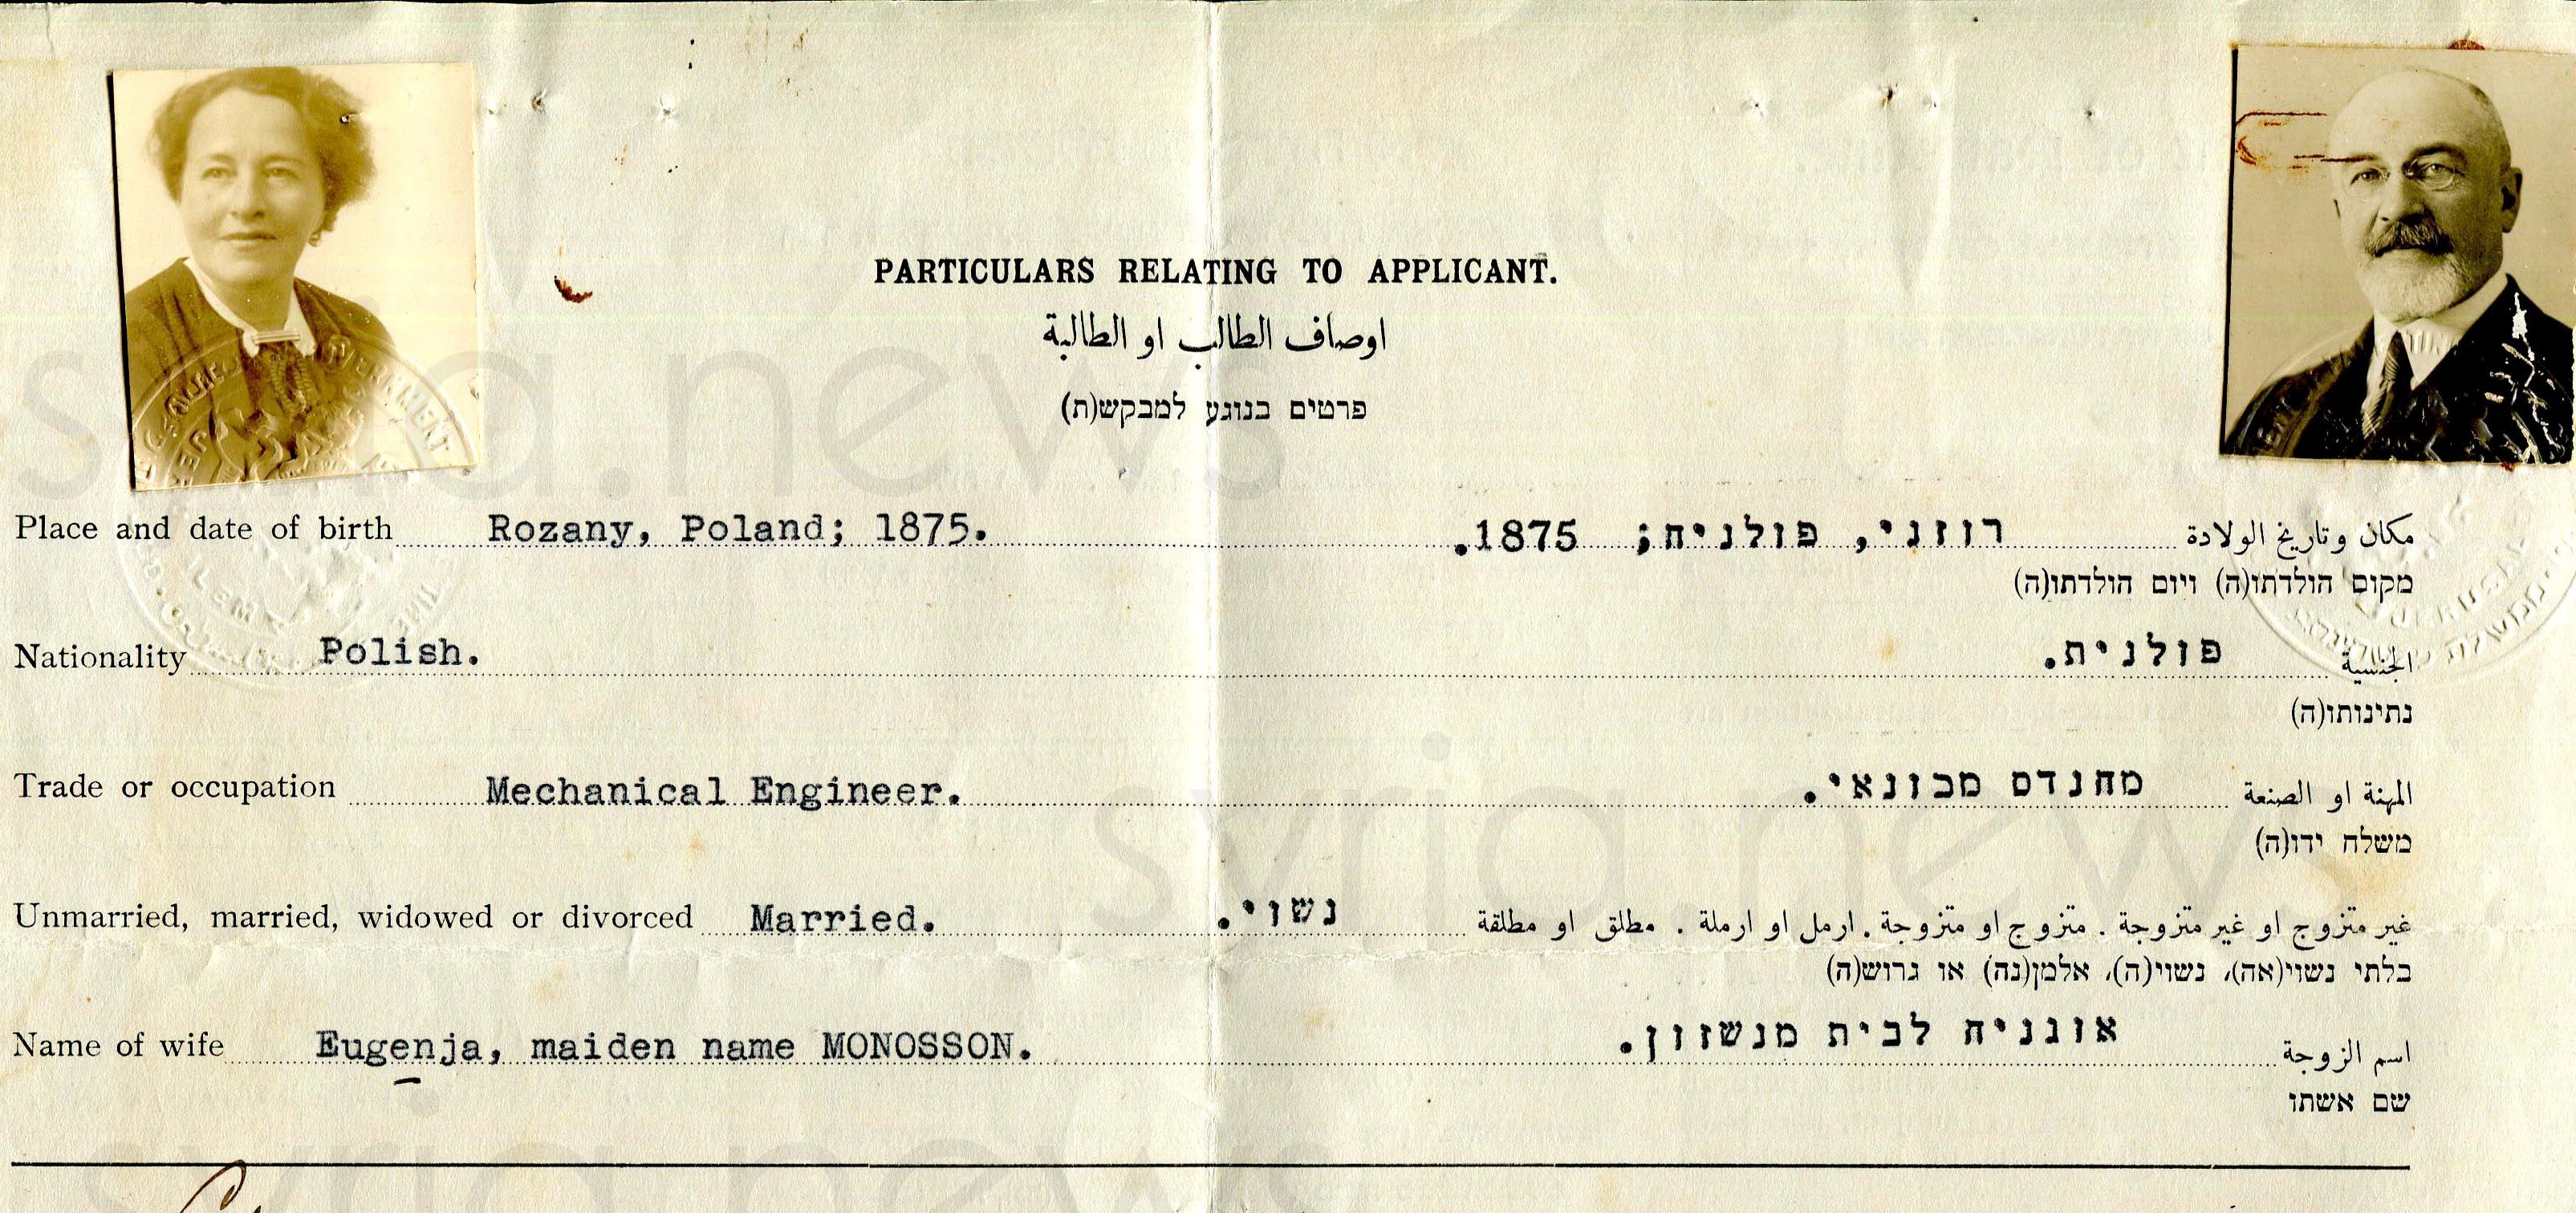 شهادة الجنسية الفلسطينية لزوجين من اليهود 1936 